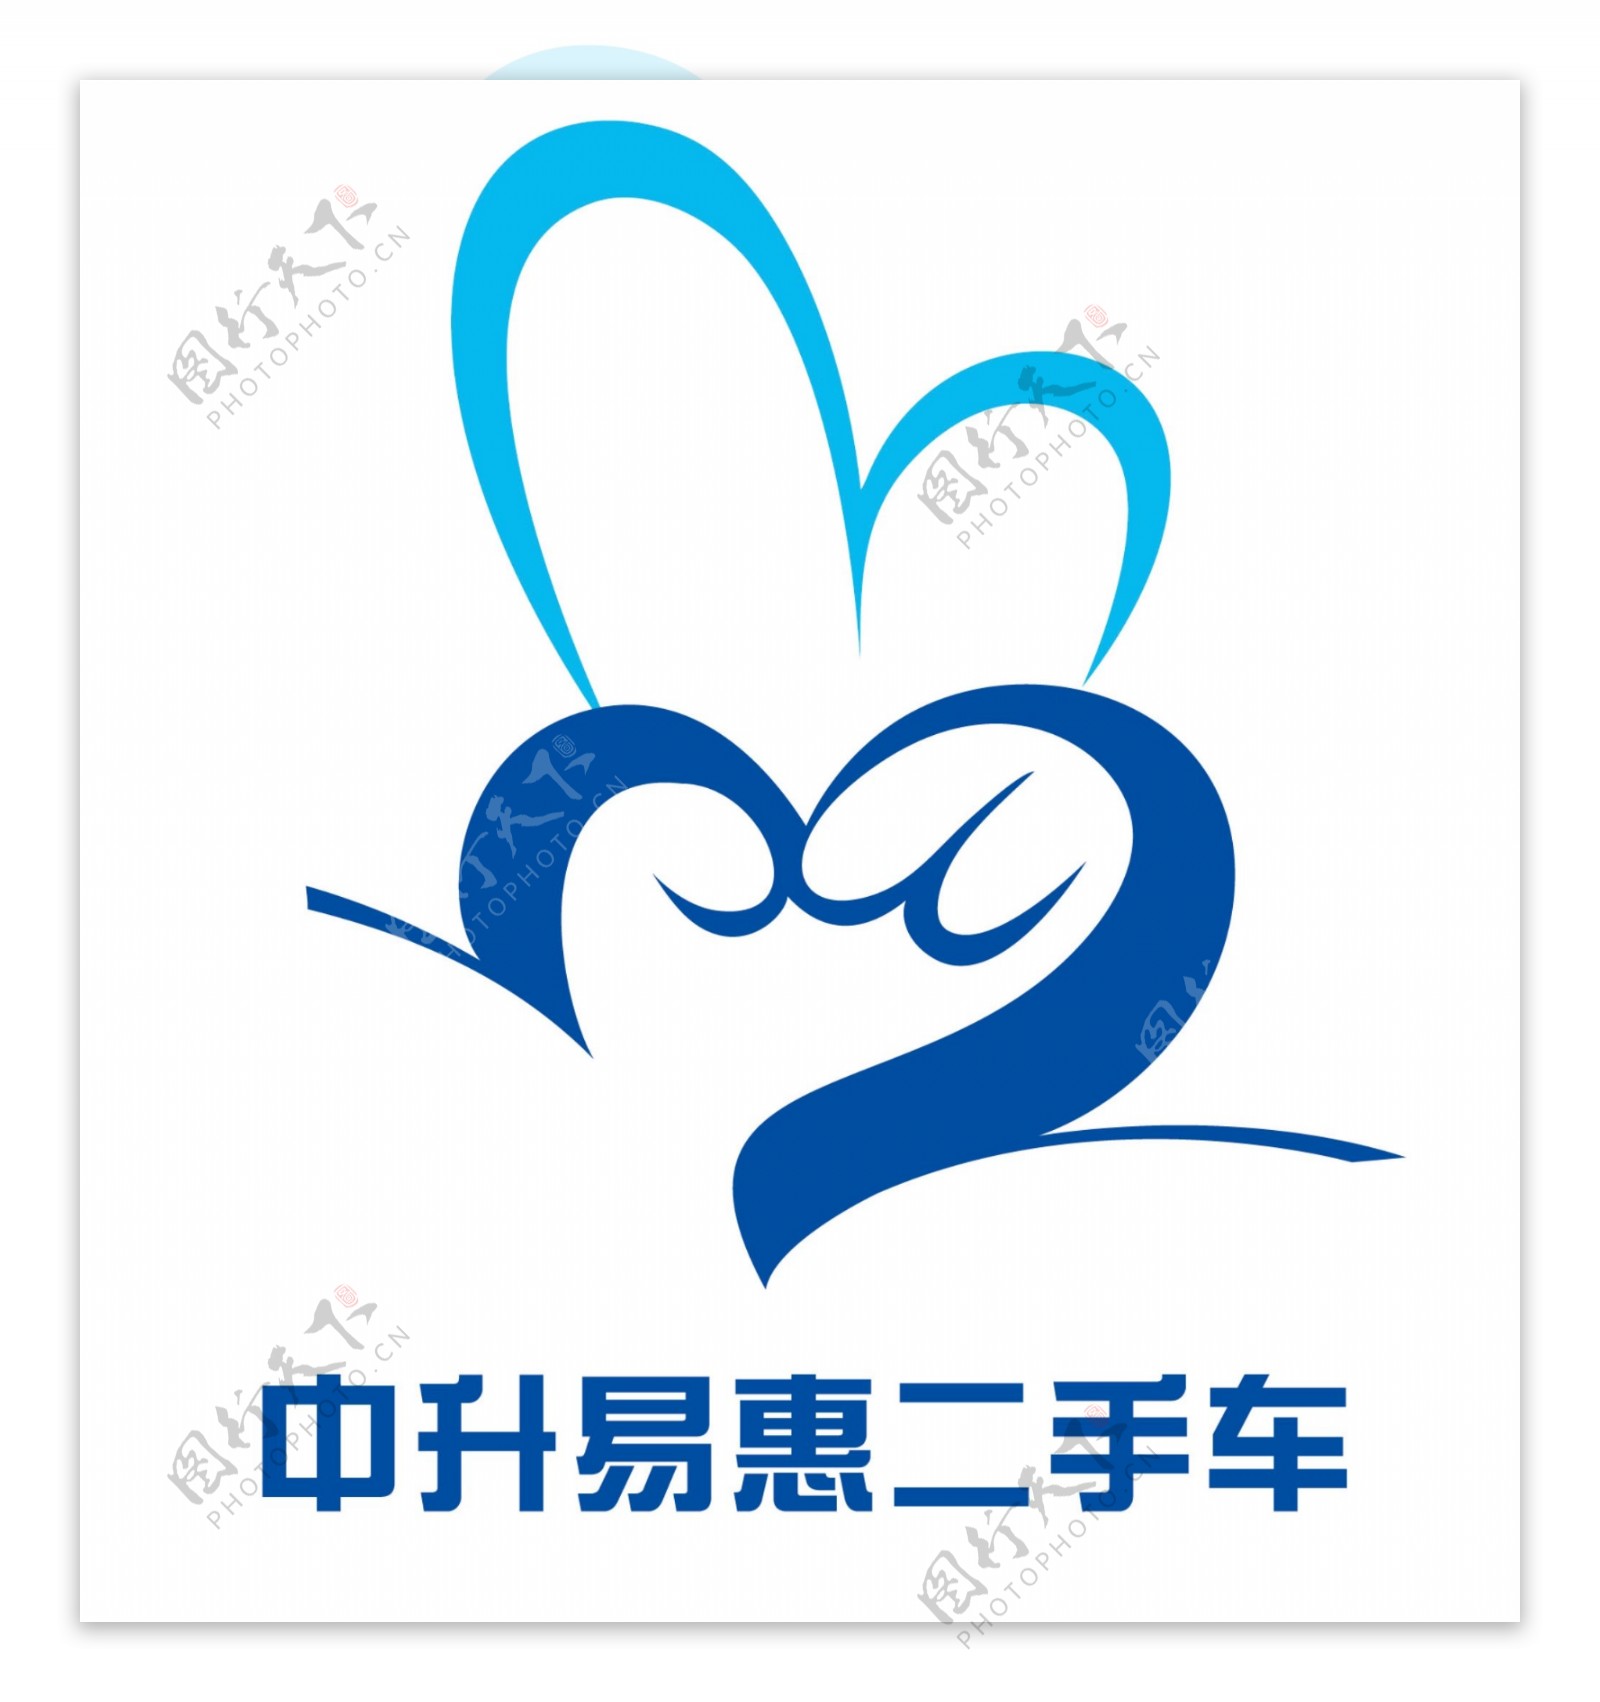 易惠二手车logo图片